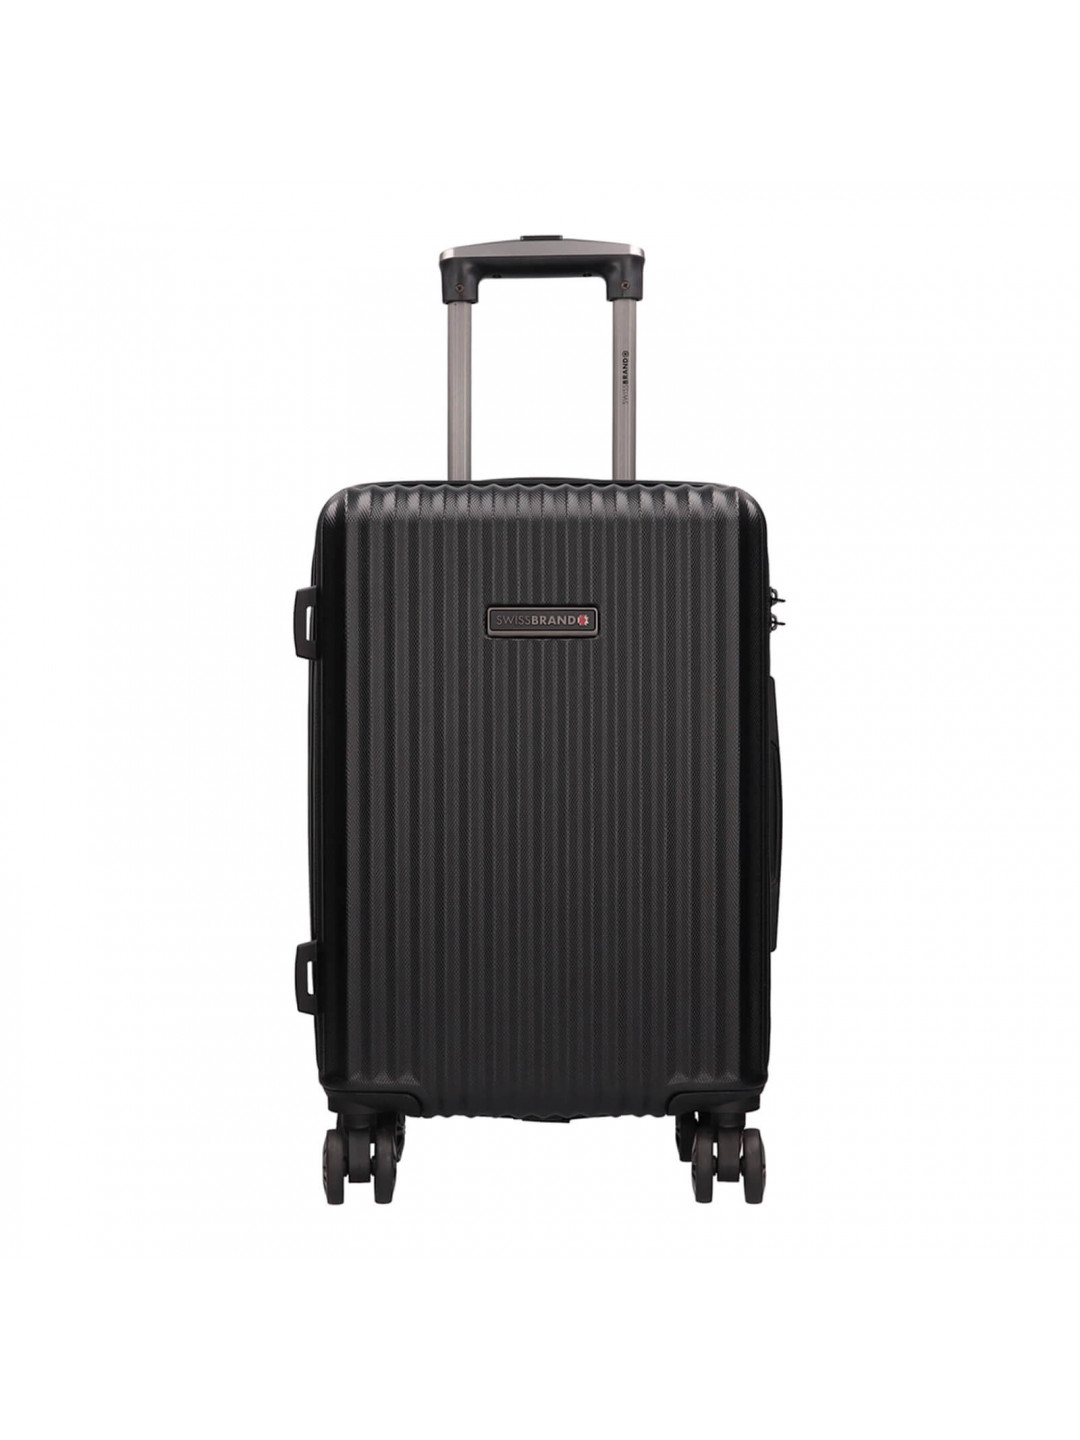 Cestovní kufr Swissbrand Marco M – černá